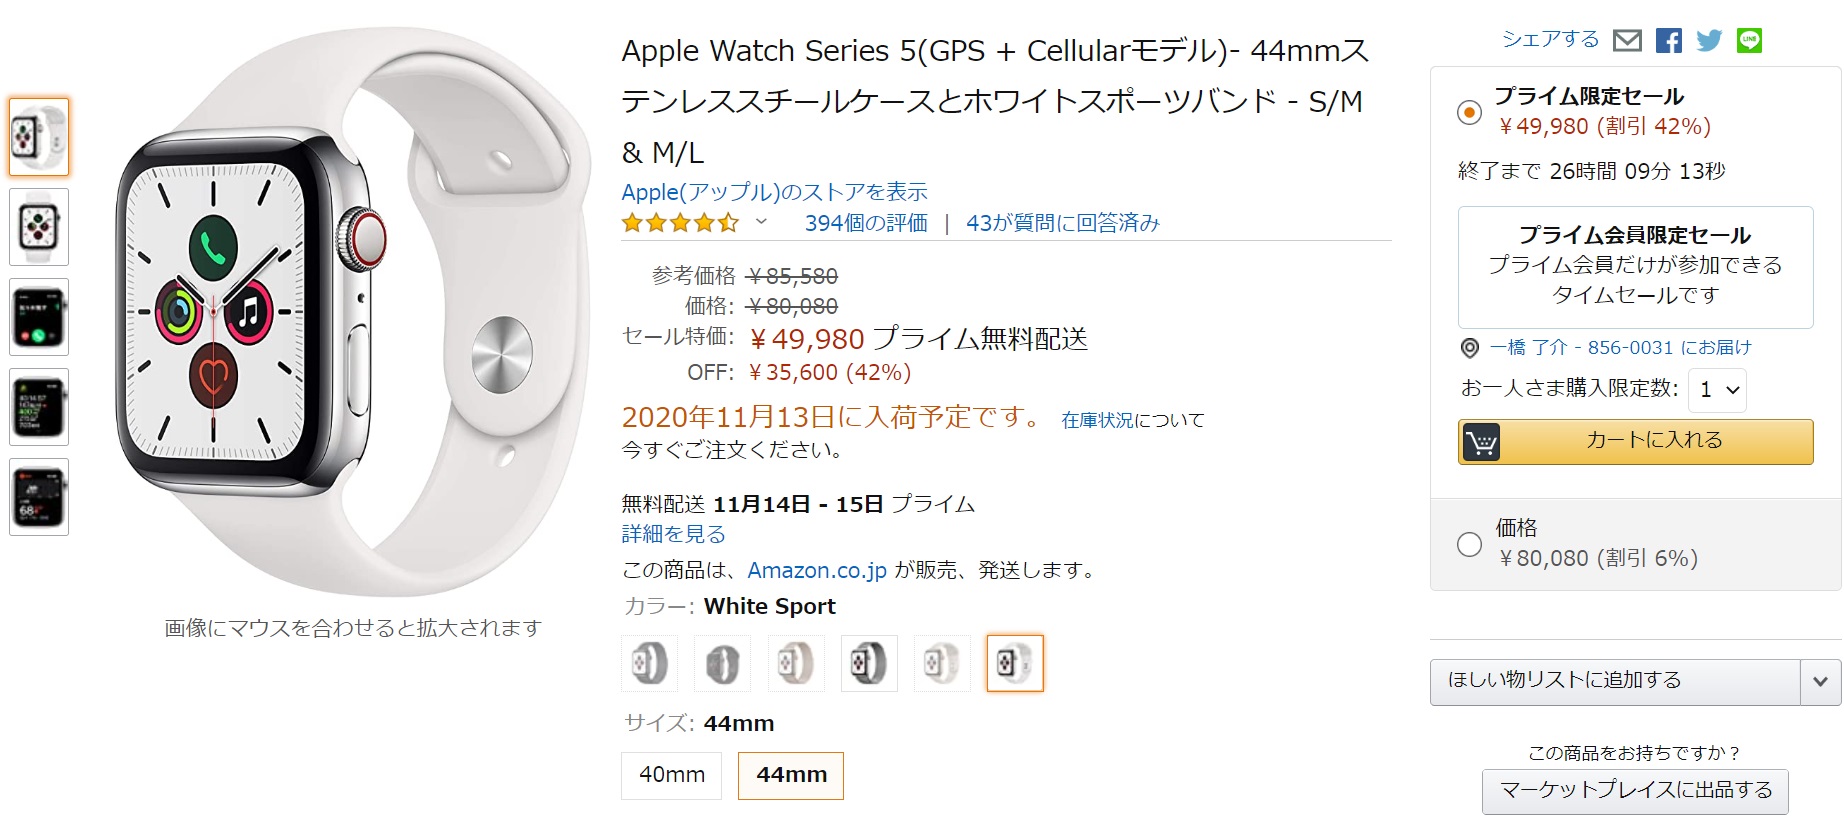 Amazon 24時間限定】42%OFFでApple Watch5 ステンレス44mmが購入できる 